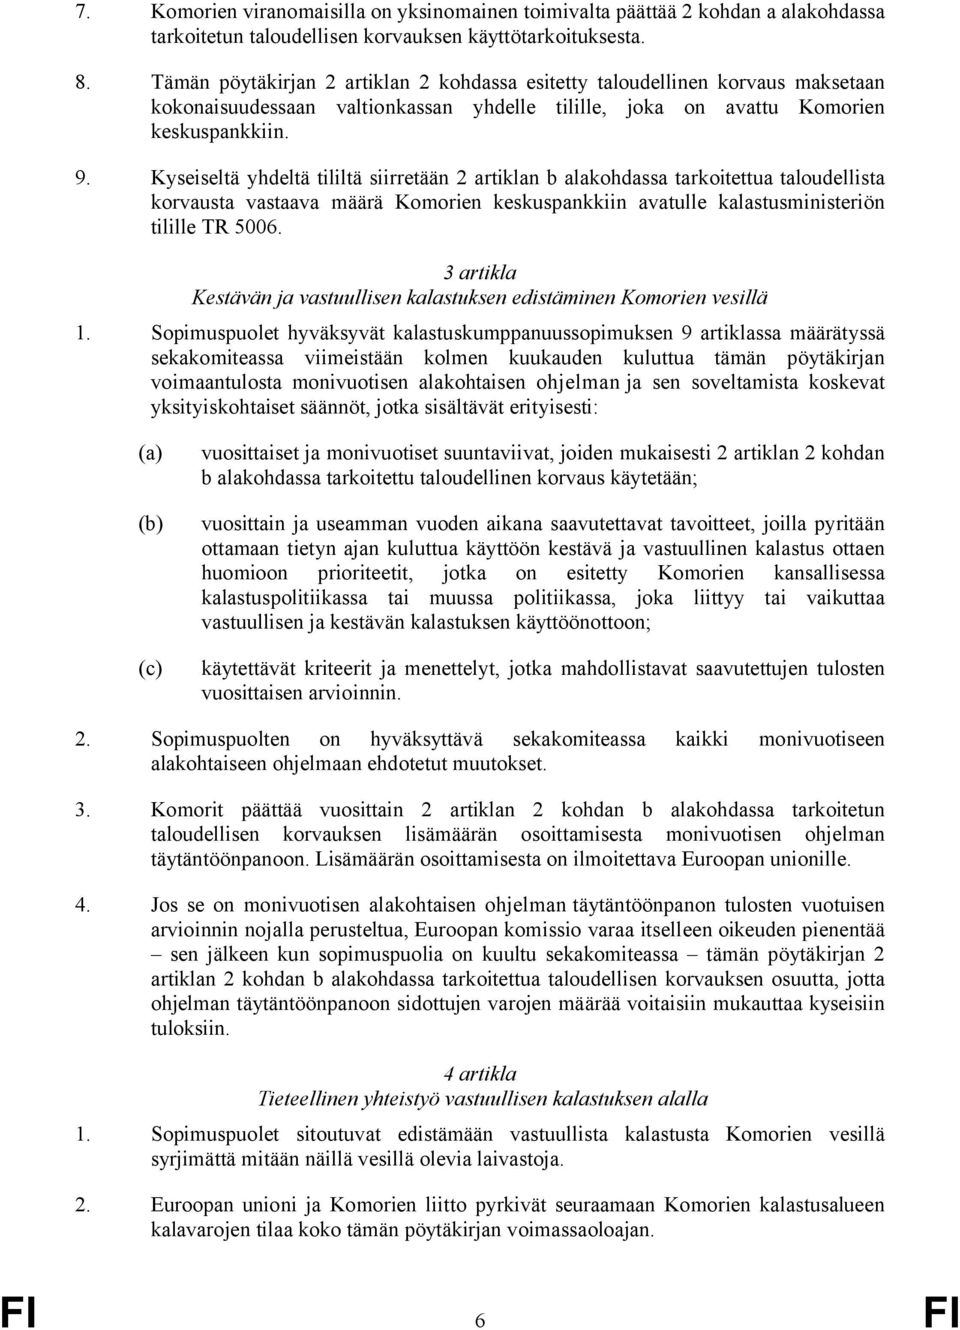 Kyseiseltä yhdeltä tililtä siirretään 2 artiklan b alakohdassa tarkoitettua taloudellista korvausta vastaava määrä Komorien keskuspankkiin avatulle kalastusministeriön tilille TR 5006.